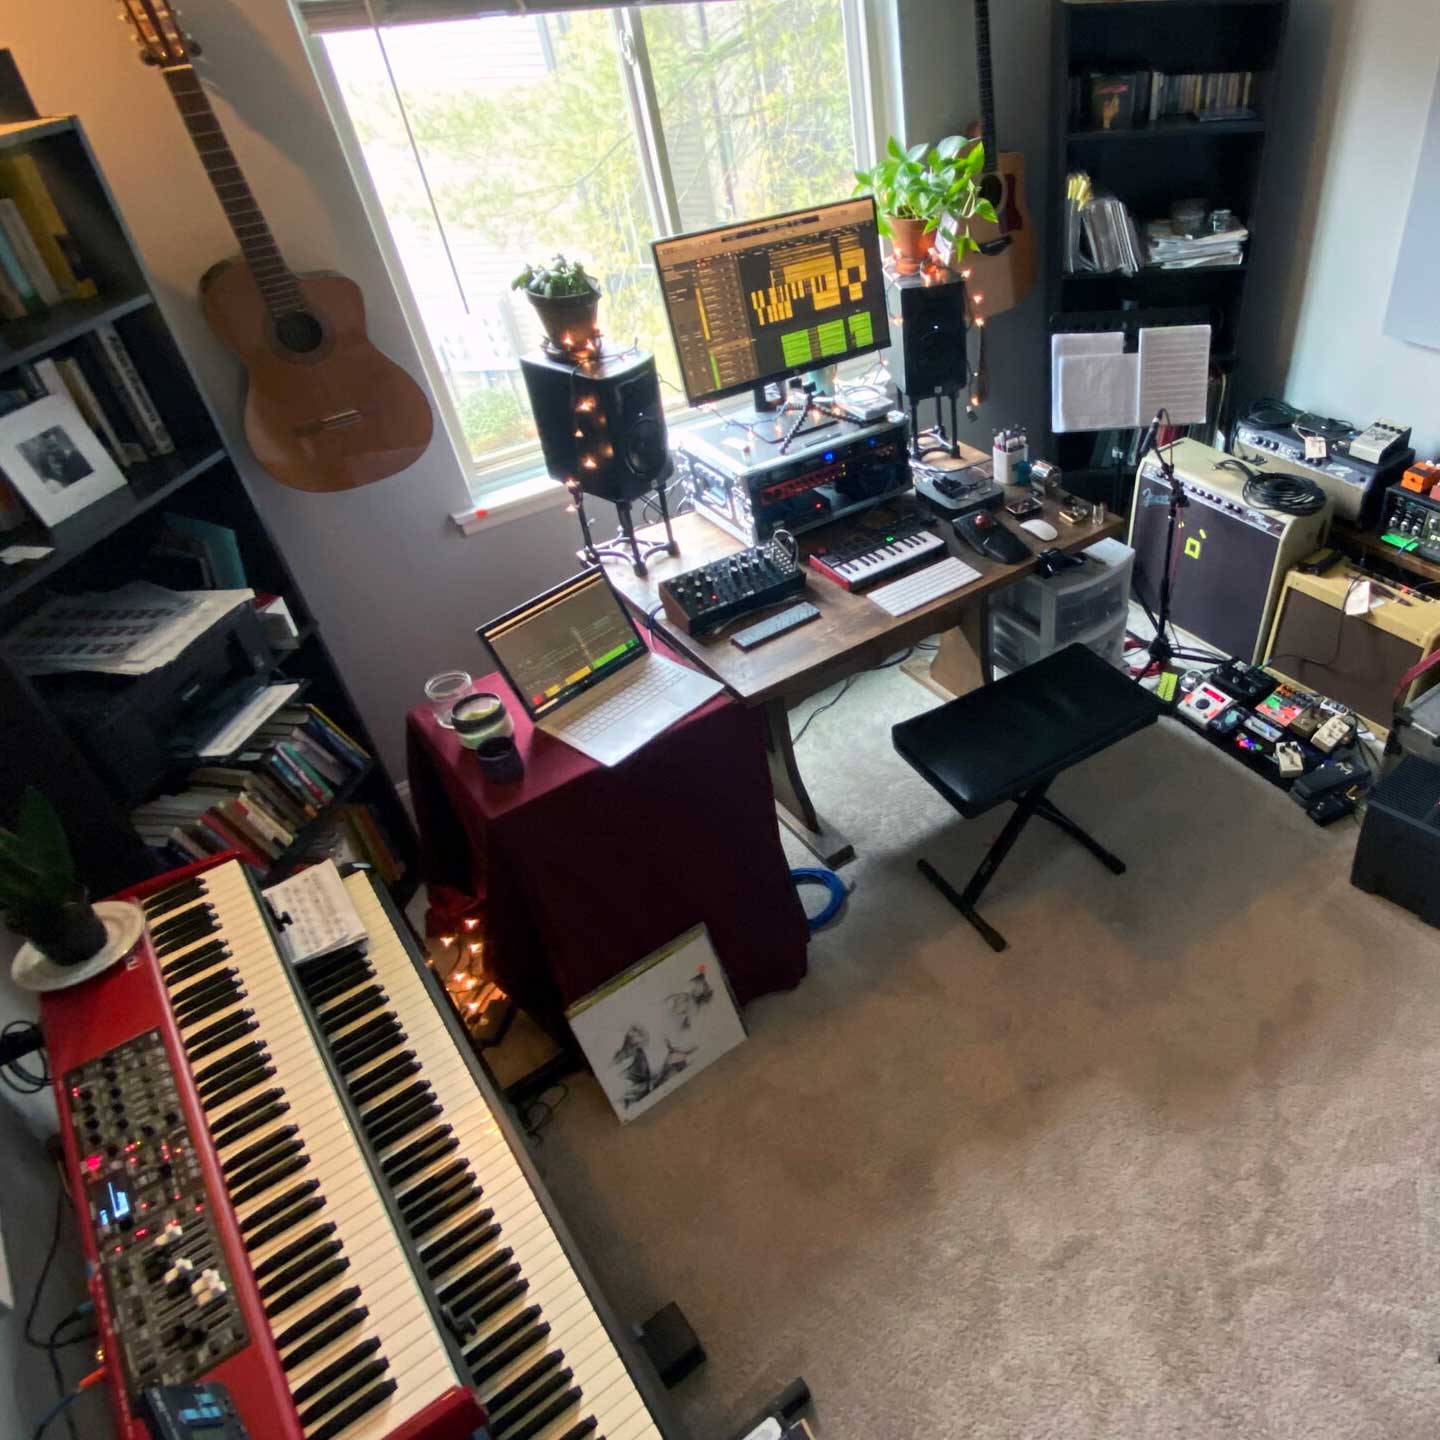 Studio rumah kantor dengan keyboard, amplifier, dan peralatan musik lainnya